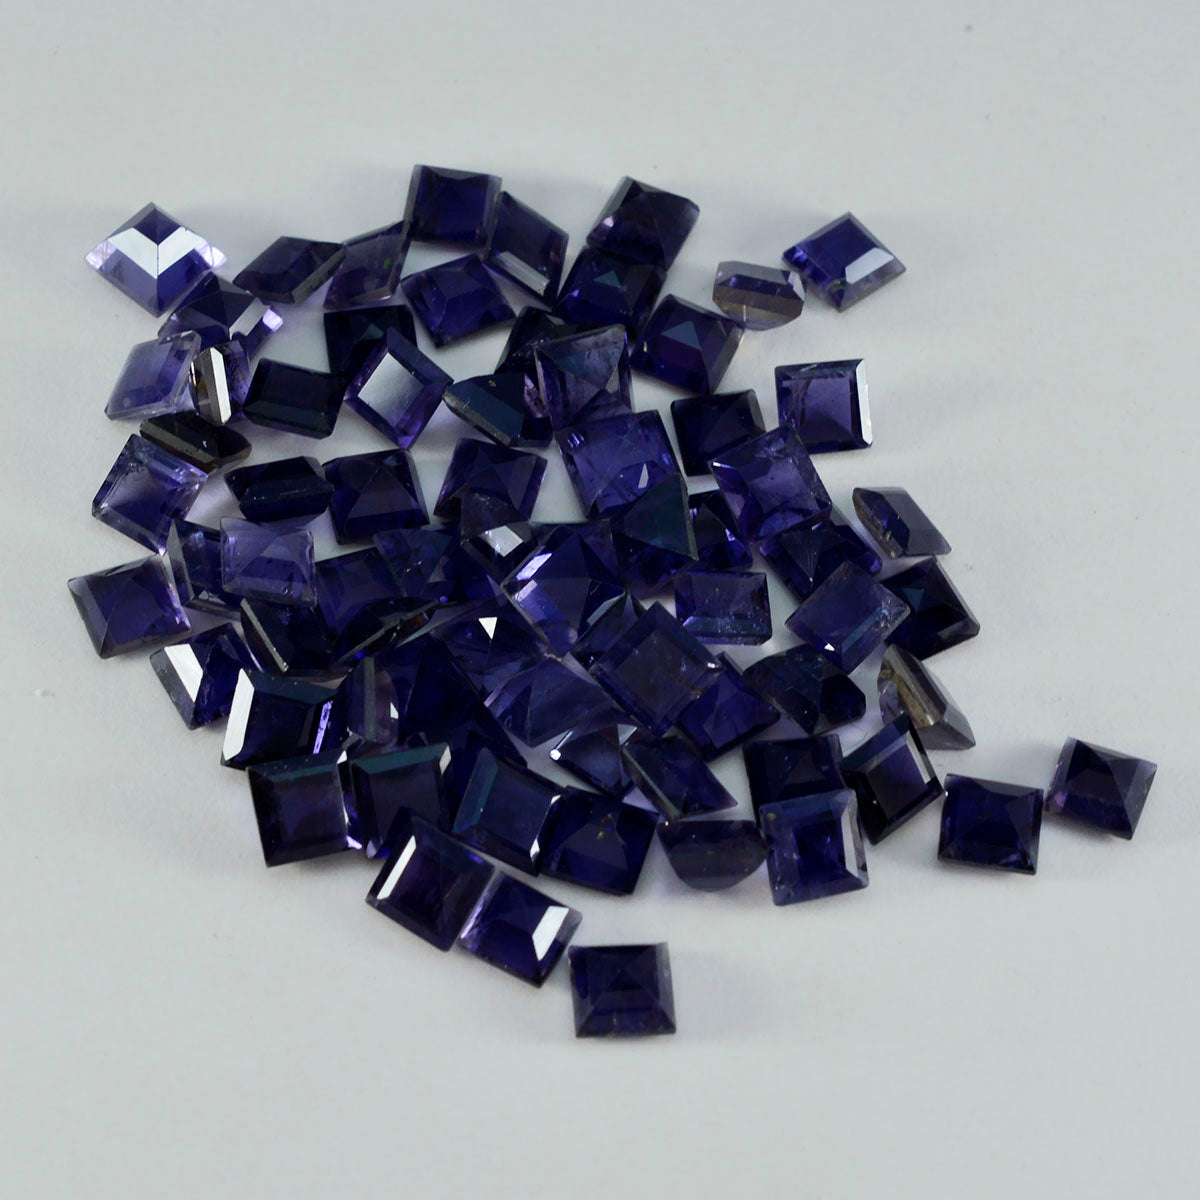 Riyogems 1PC blauwe ioliet gefacetteerd 7x7 mm vierkante vorm A+ kwaliteitsedelsteen